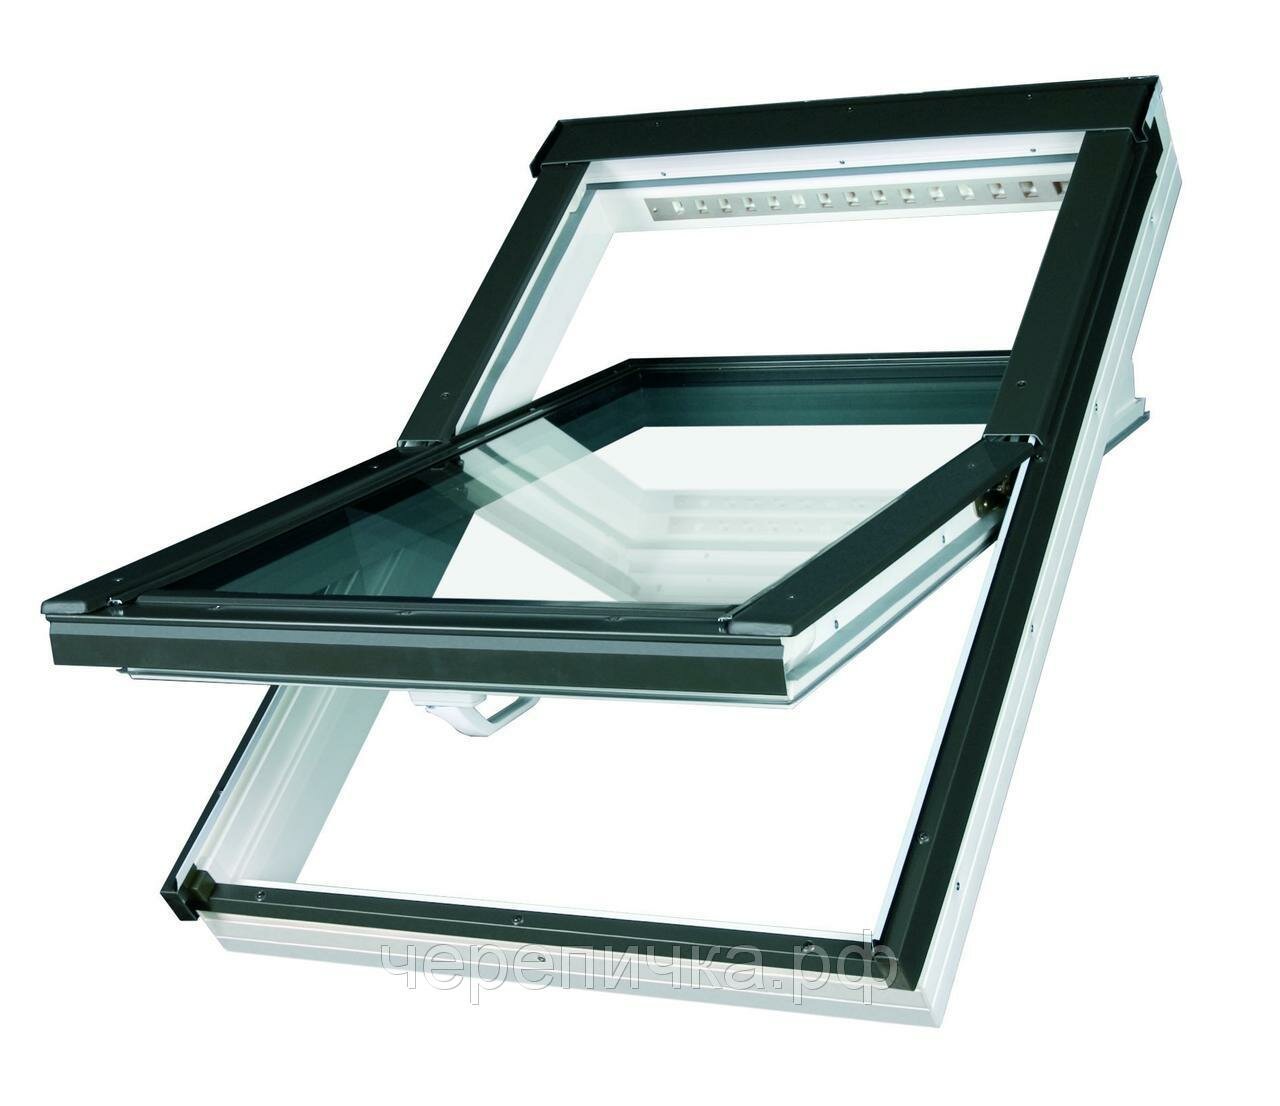 Мансардное окно Fakro PTP U4 PROFI ПВХ двухкамерным стеклопакетом (55*78)